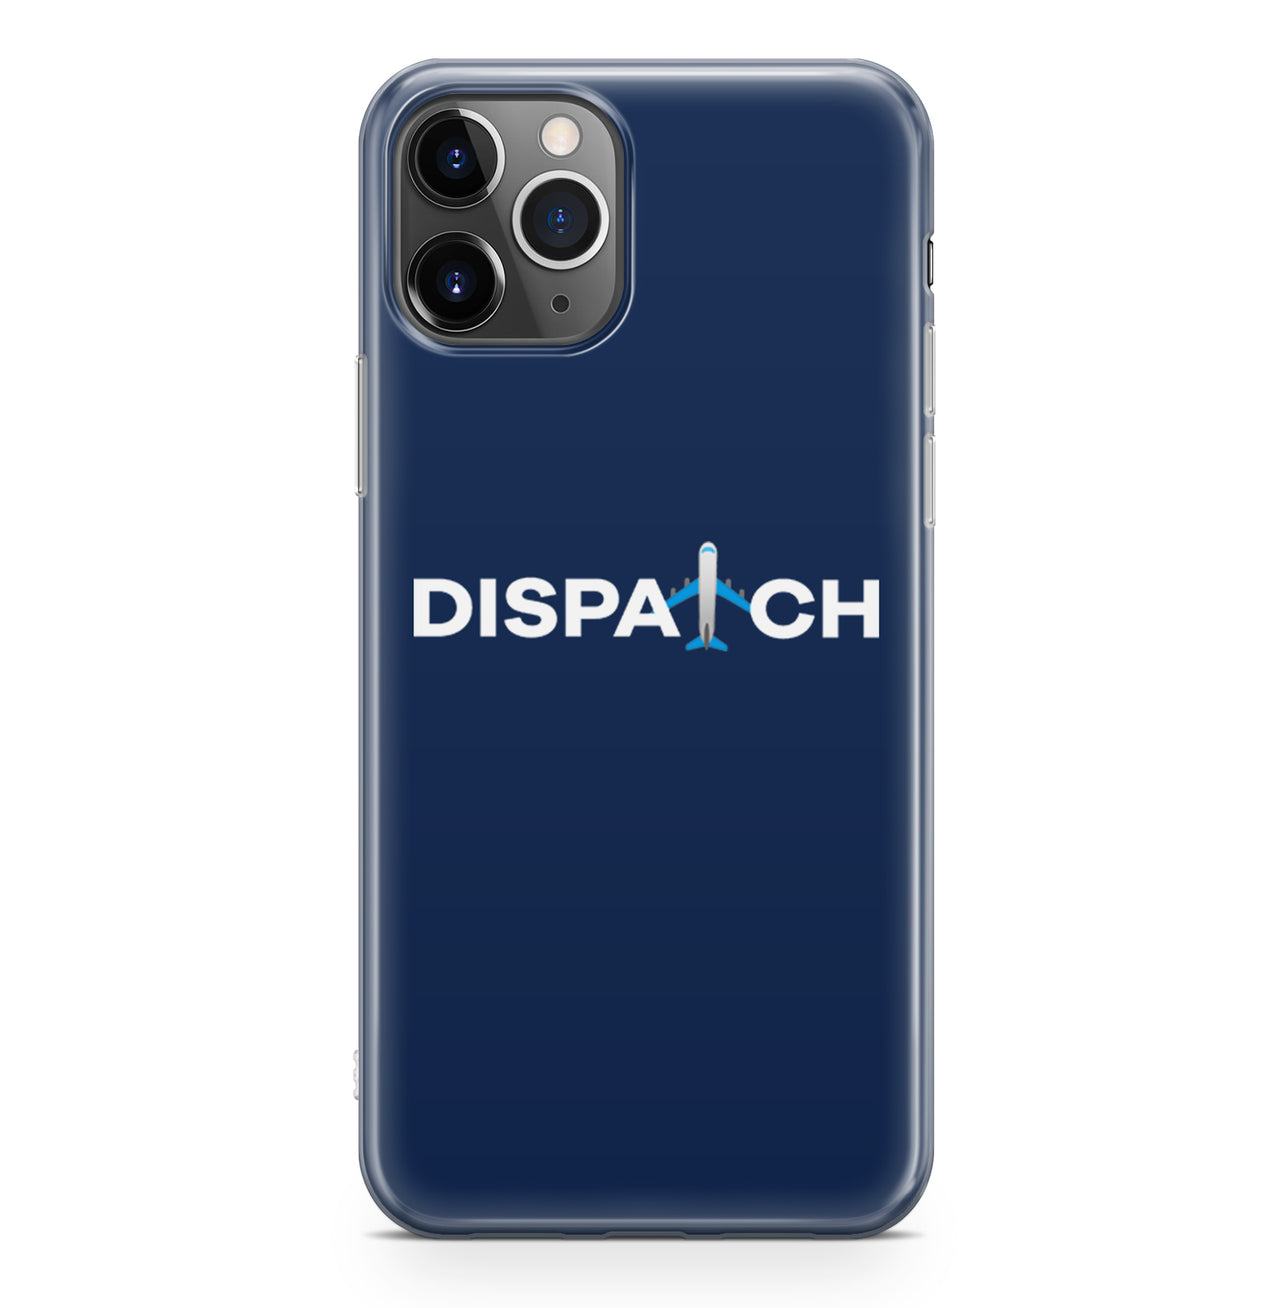 Dispatch Designed iPhone Cases